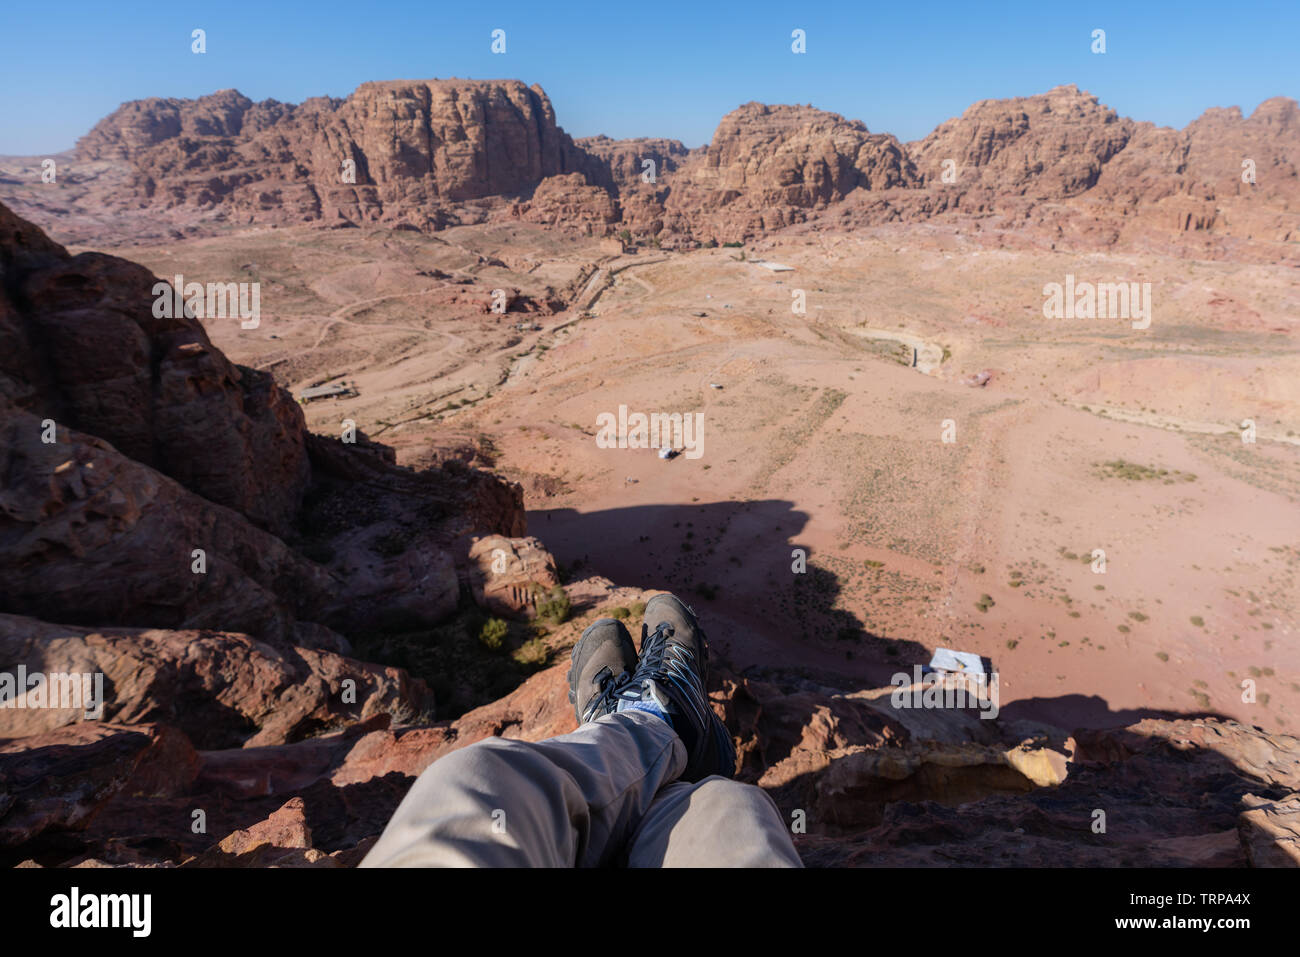 Travelling, hiking and adventurous in desert Middle-East. Traveler enjoying high angle view of desert landscape in Jordan Stock Photo